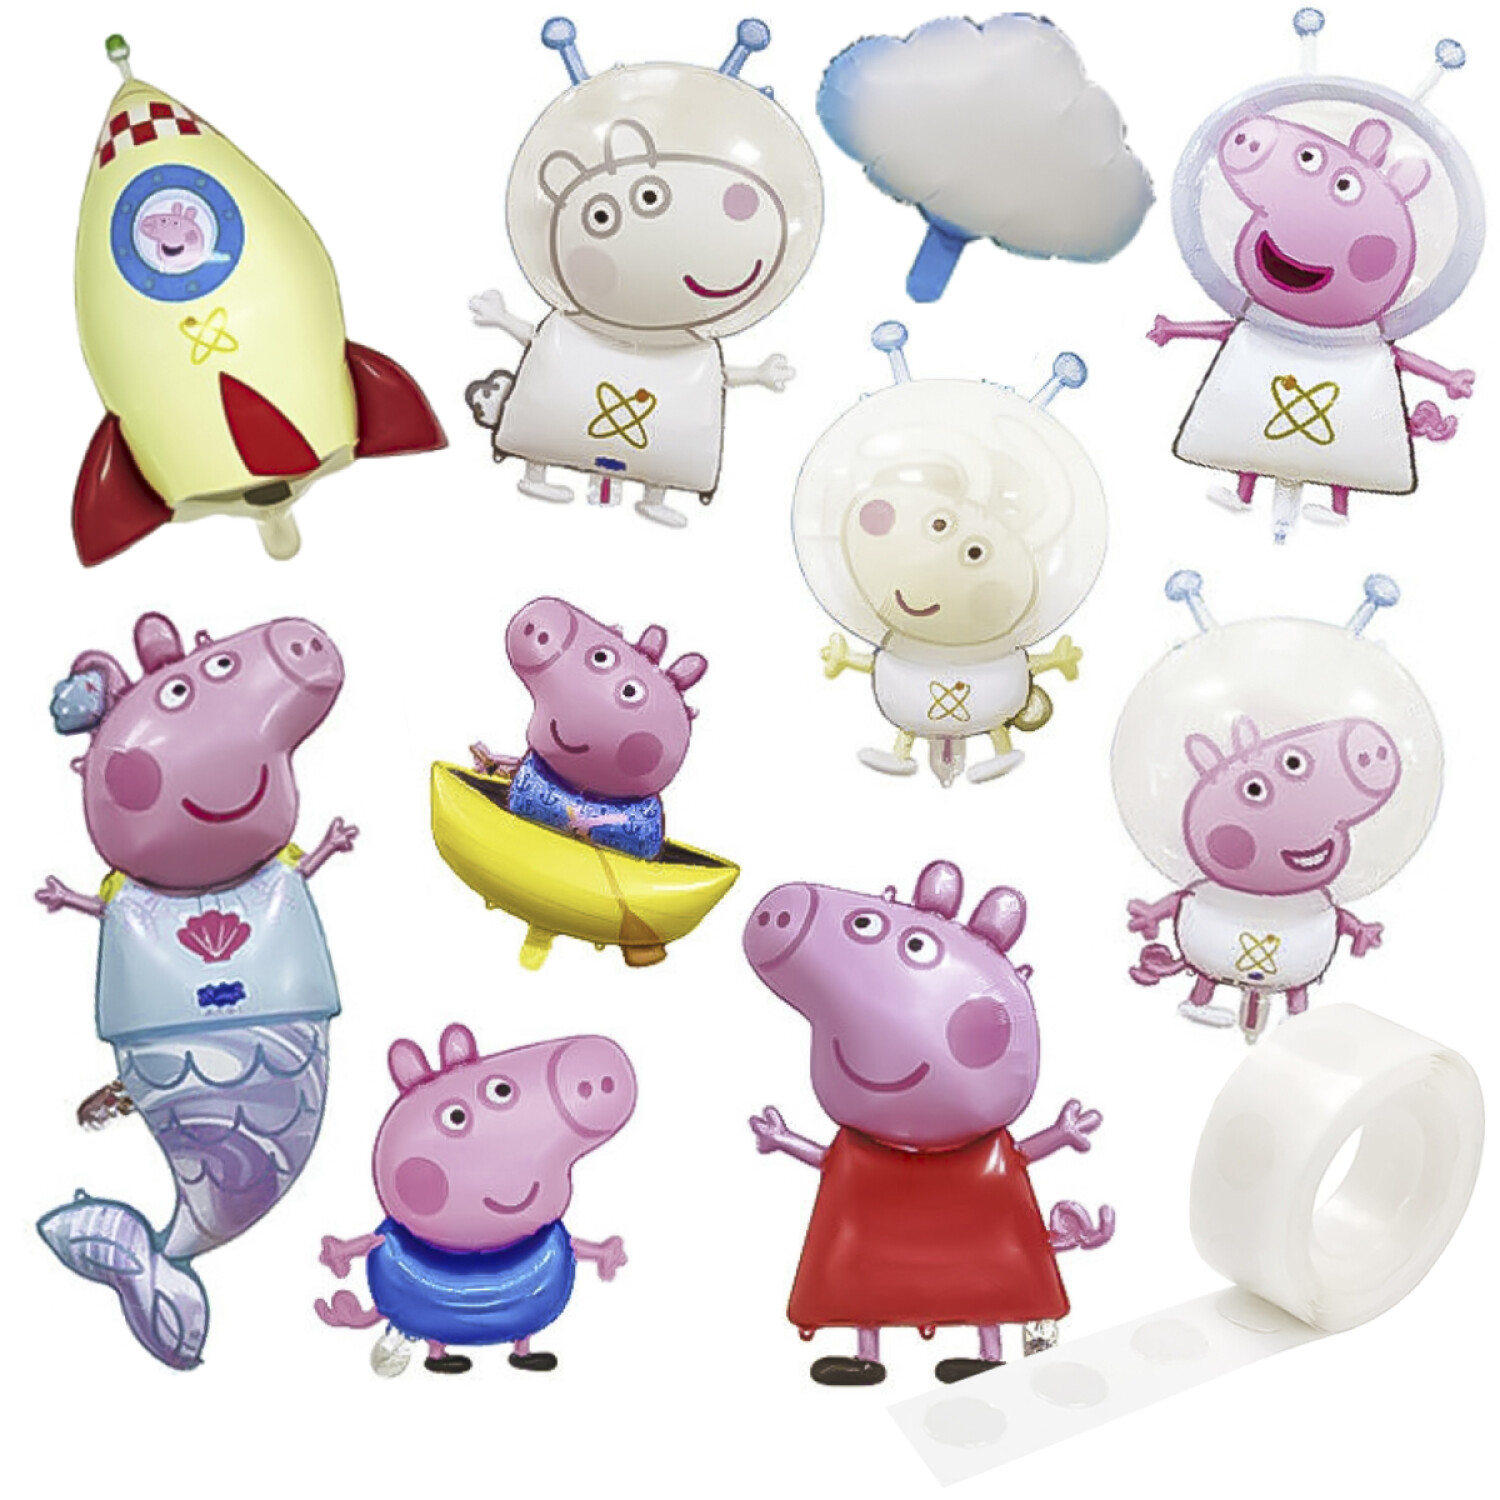 Regalar globos de Peppa Pig – Balloon Box